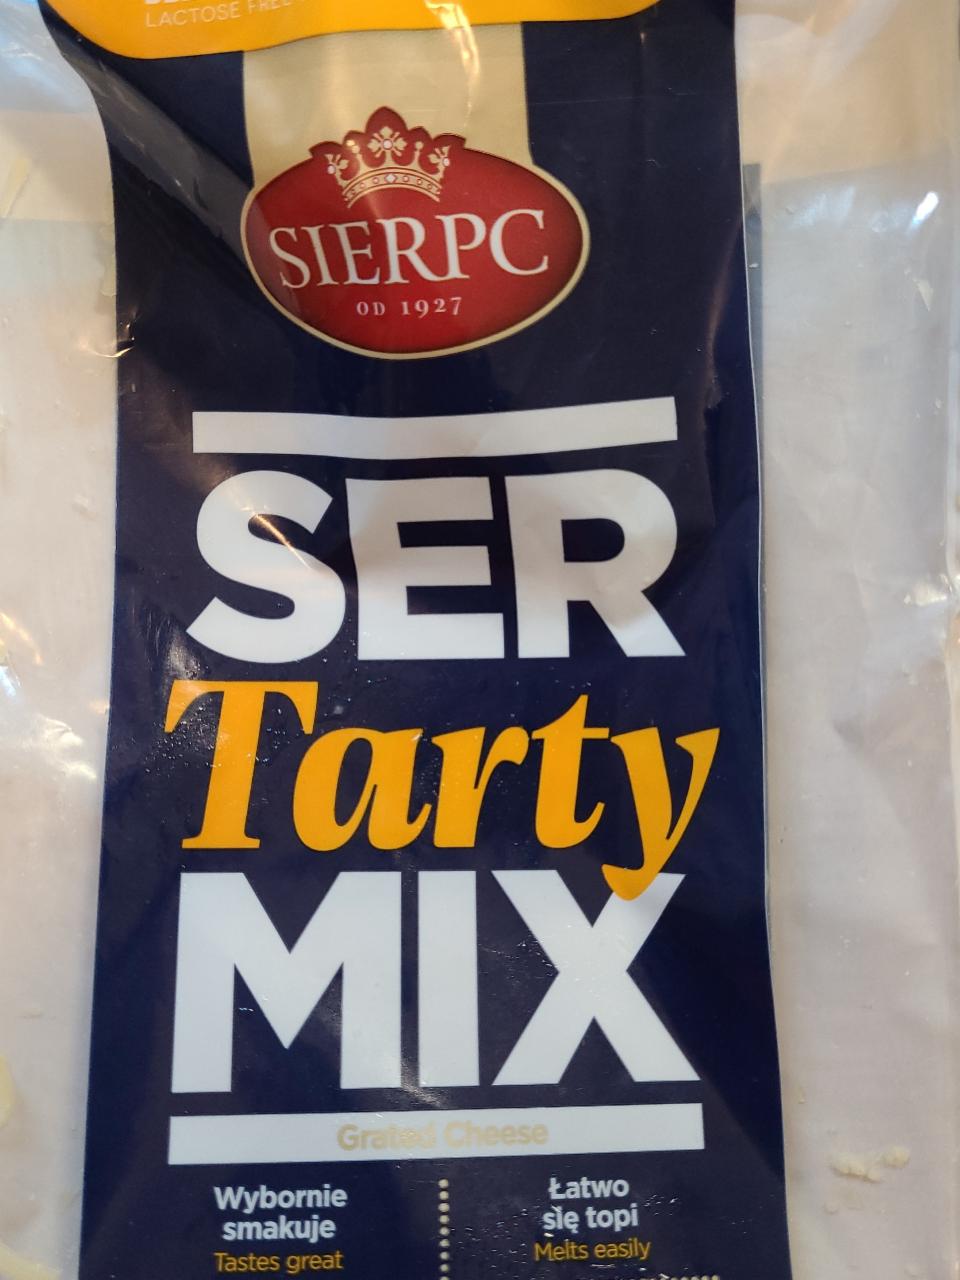 Zdjęcia - Sierpc Ser tarty mix 150 g